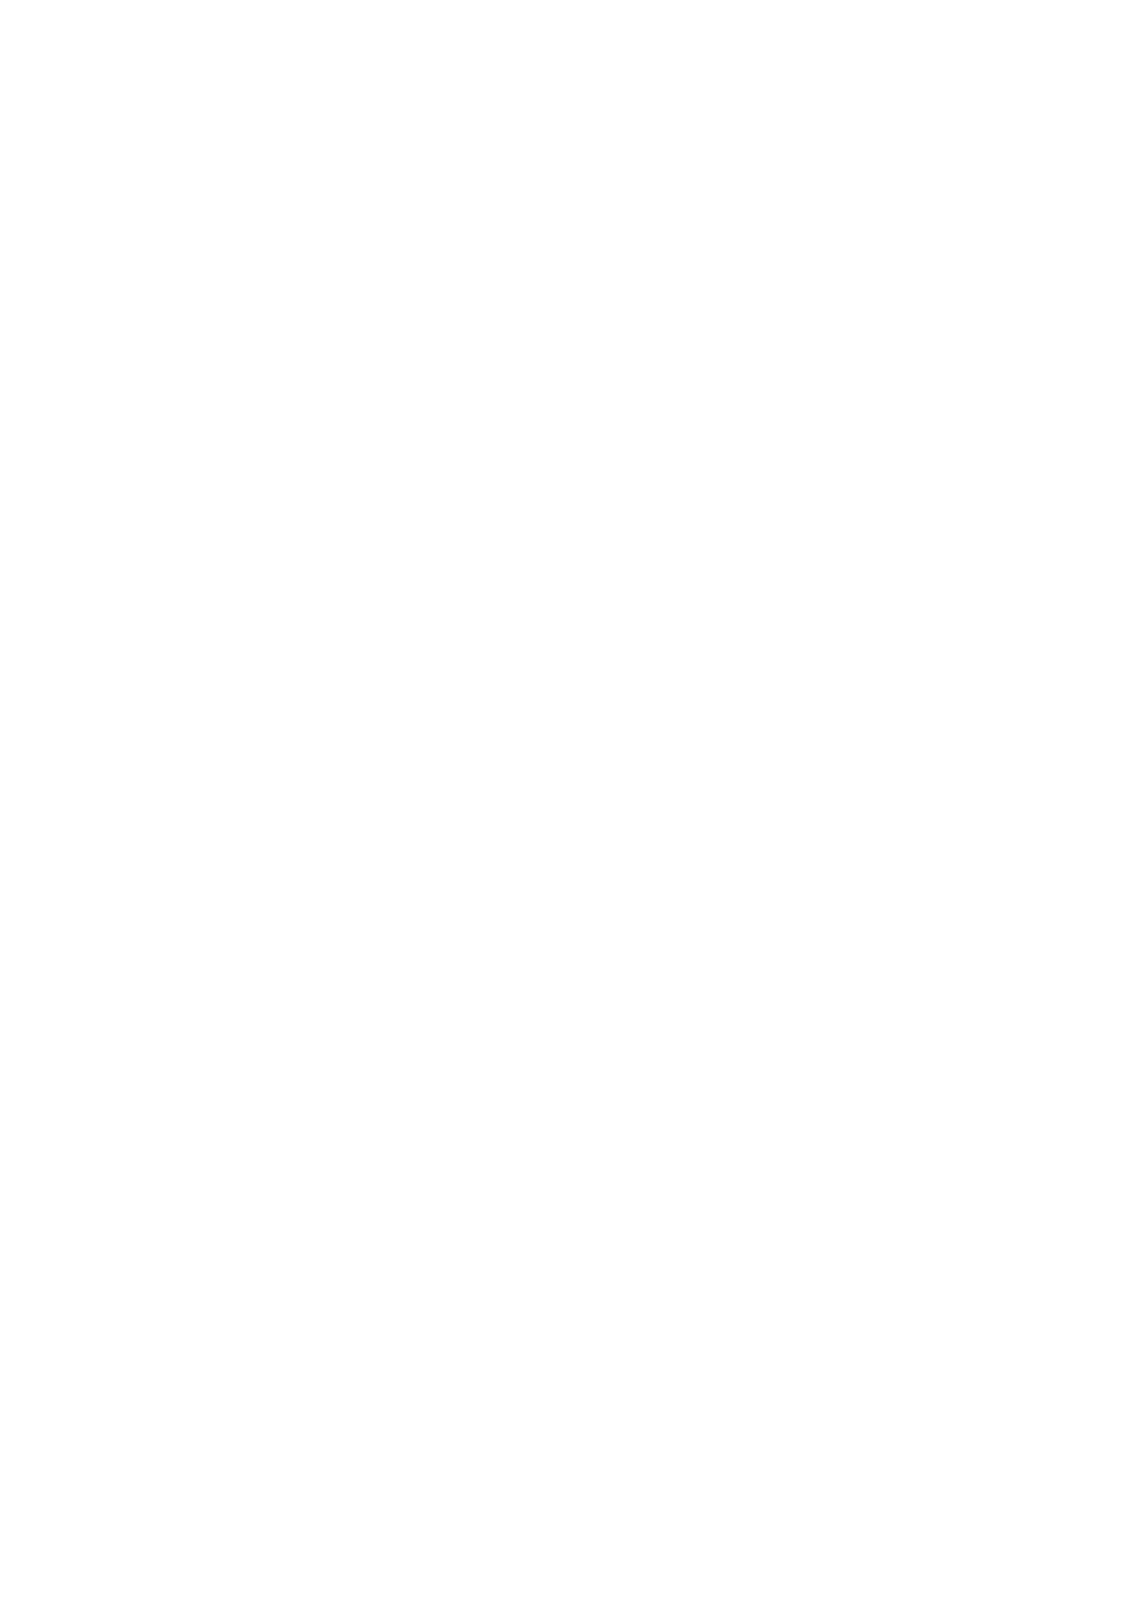 (Touhou Kouroumu 5) [Avion Village (Jonylaser R)] Oni Musume to Sugosu Taida na Nichijoo (Spending a Lazy Day with the Oni Girl) (Touhou Project) (東方紅楼夢5) [アビオン村 (Jonylaser R)] 鬼娘と過ごす怠惰な日常 (東方Project)